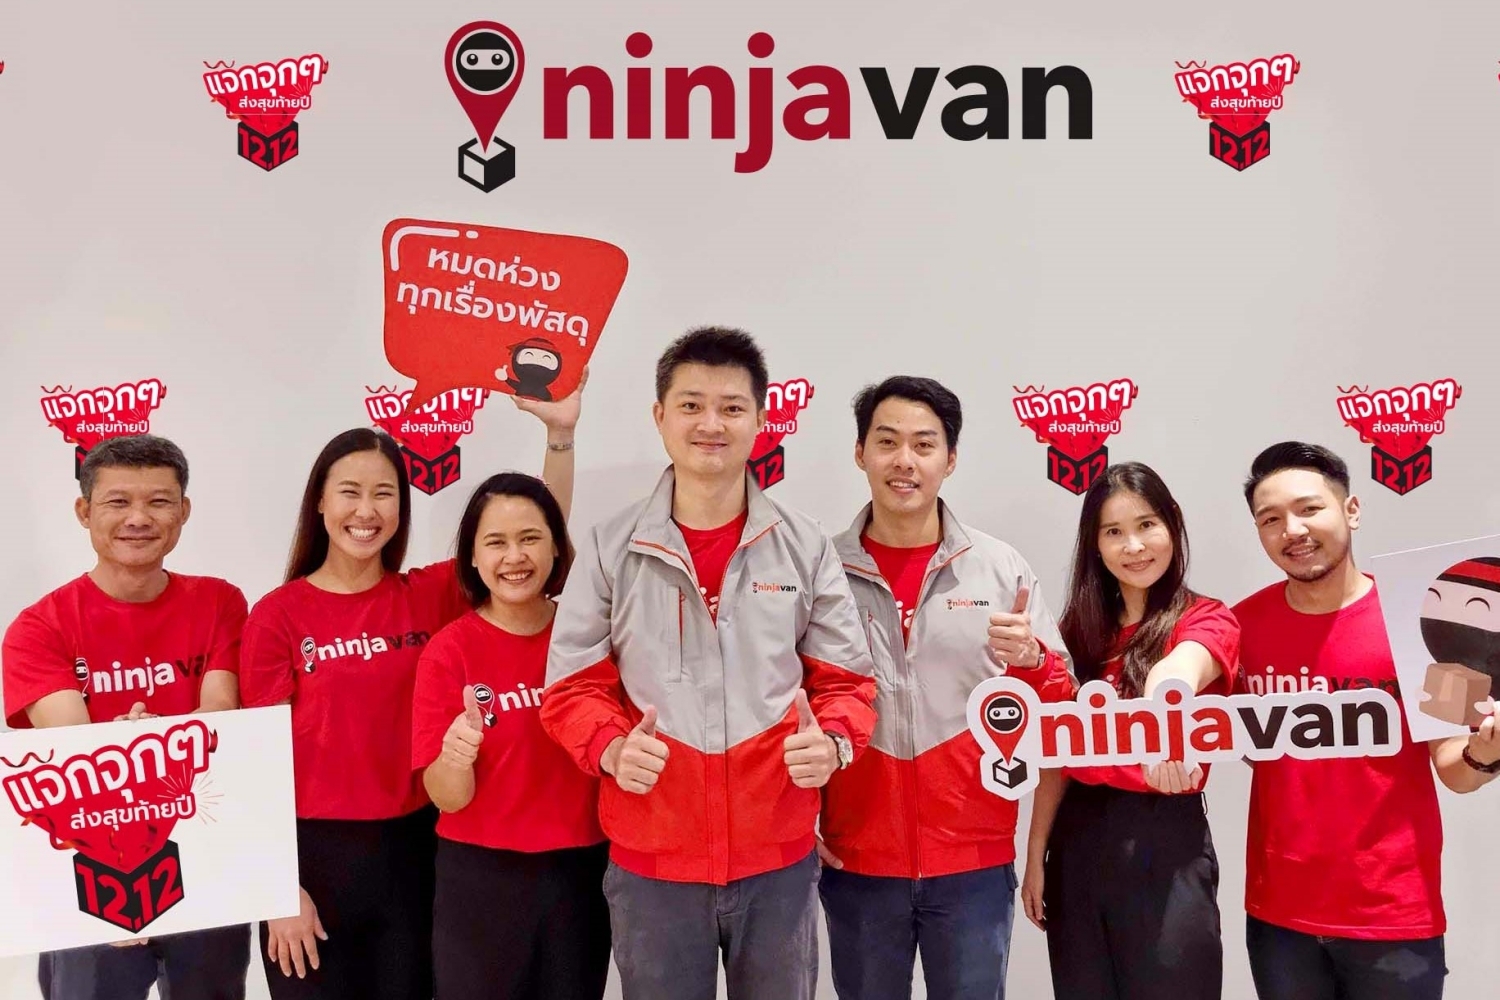 นินจาแวน ลุยเพิ่มพันธมิตรหน้าร้านพันแห่งทั่วไทย พร้อมเปิดศูนย์คัดแยกพัสดุรับอีคอมเมิร์ซโตไม่หยุดในปี65 